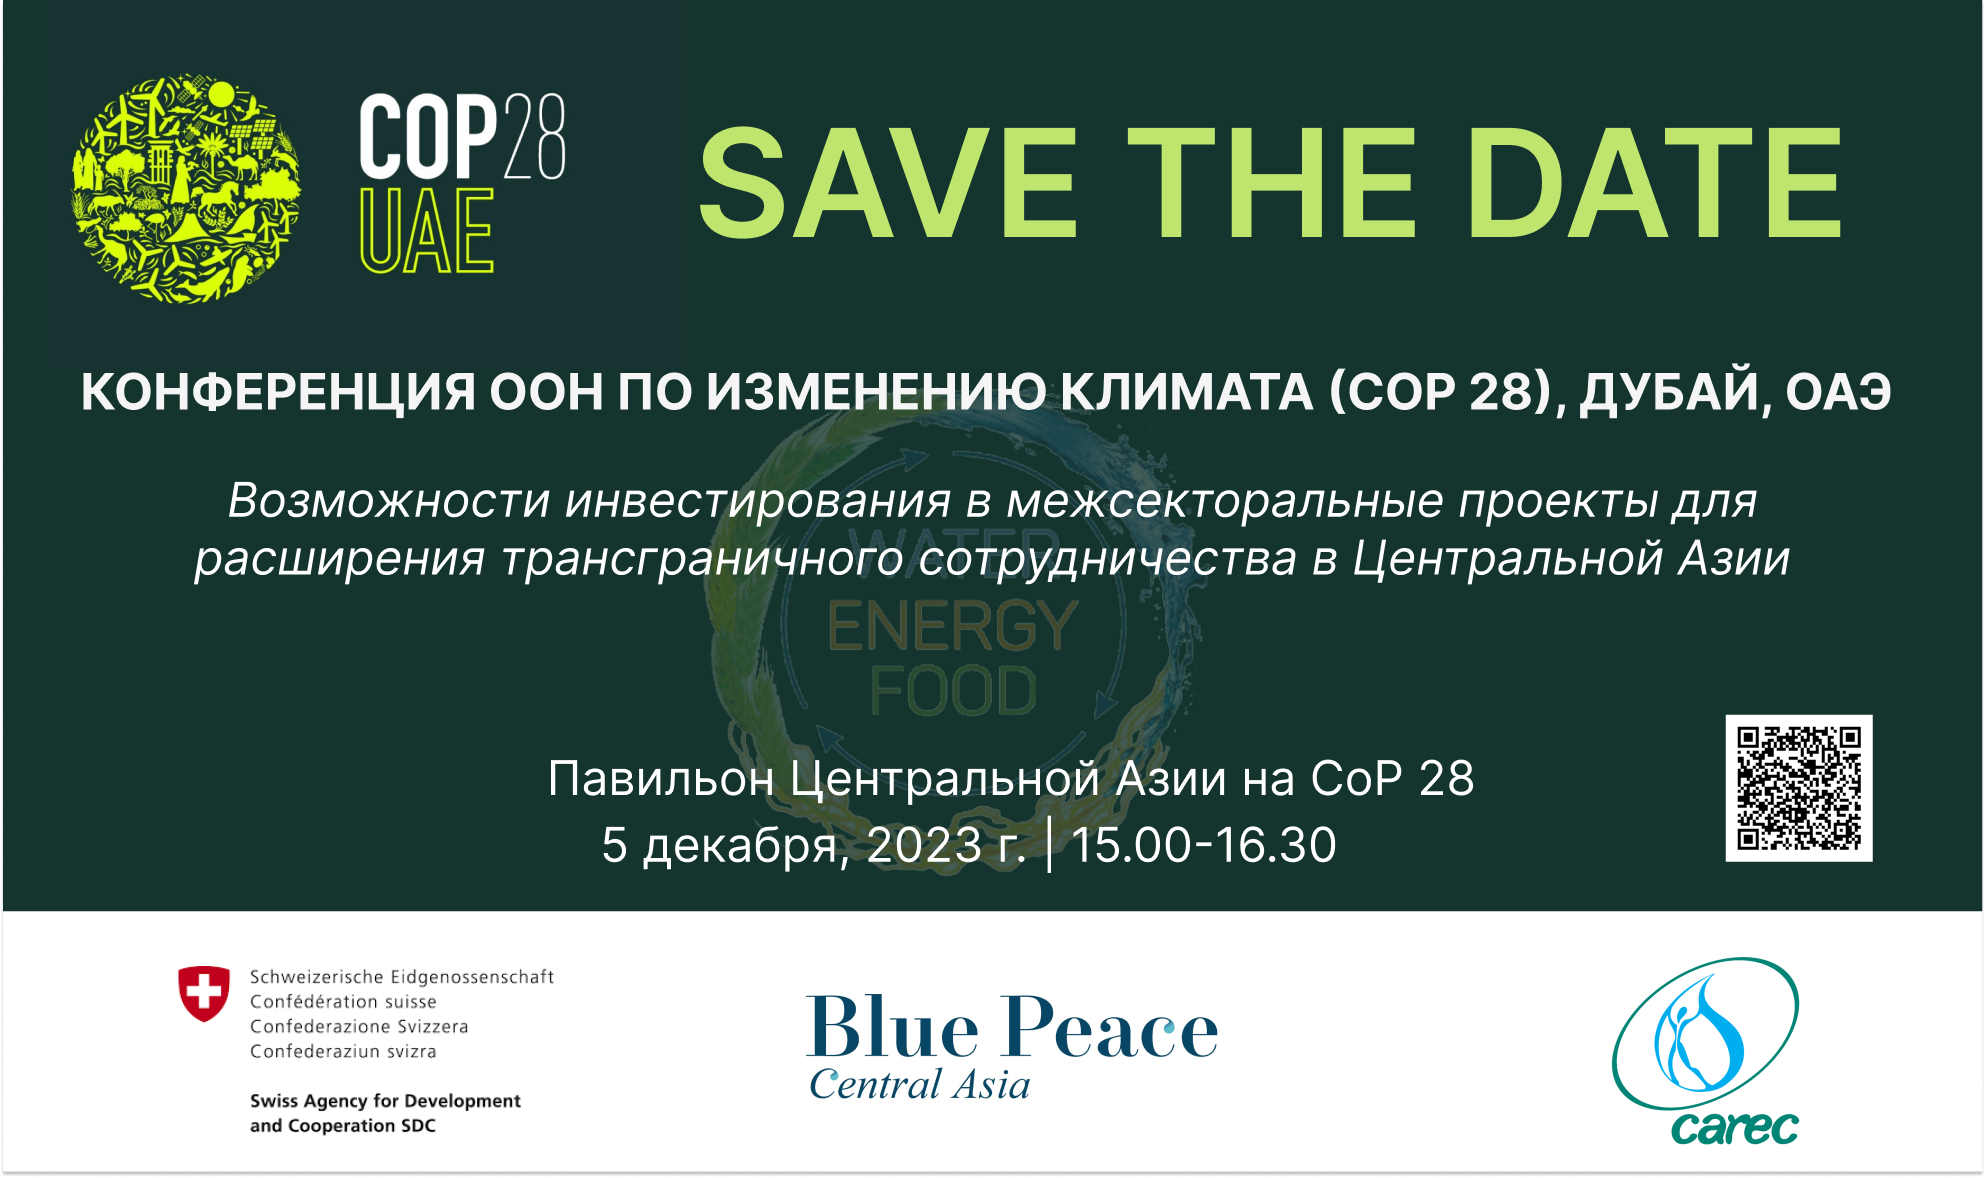 Обсуждайте возможности инвестирования в проекты Нексус на КС-28 РКИК ООН вместе с инициативой Blue Peace Центральная Азия